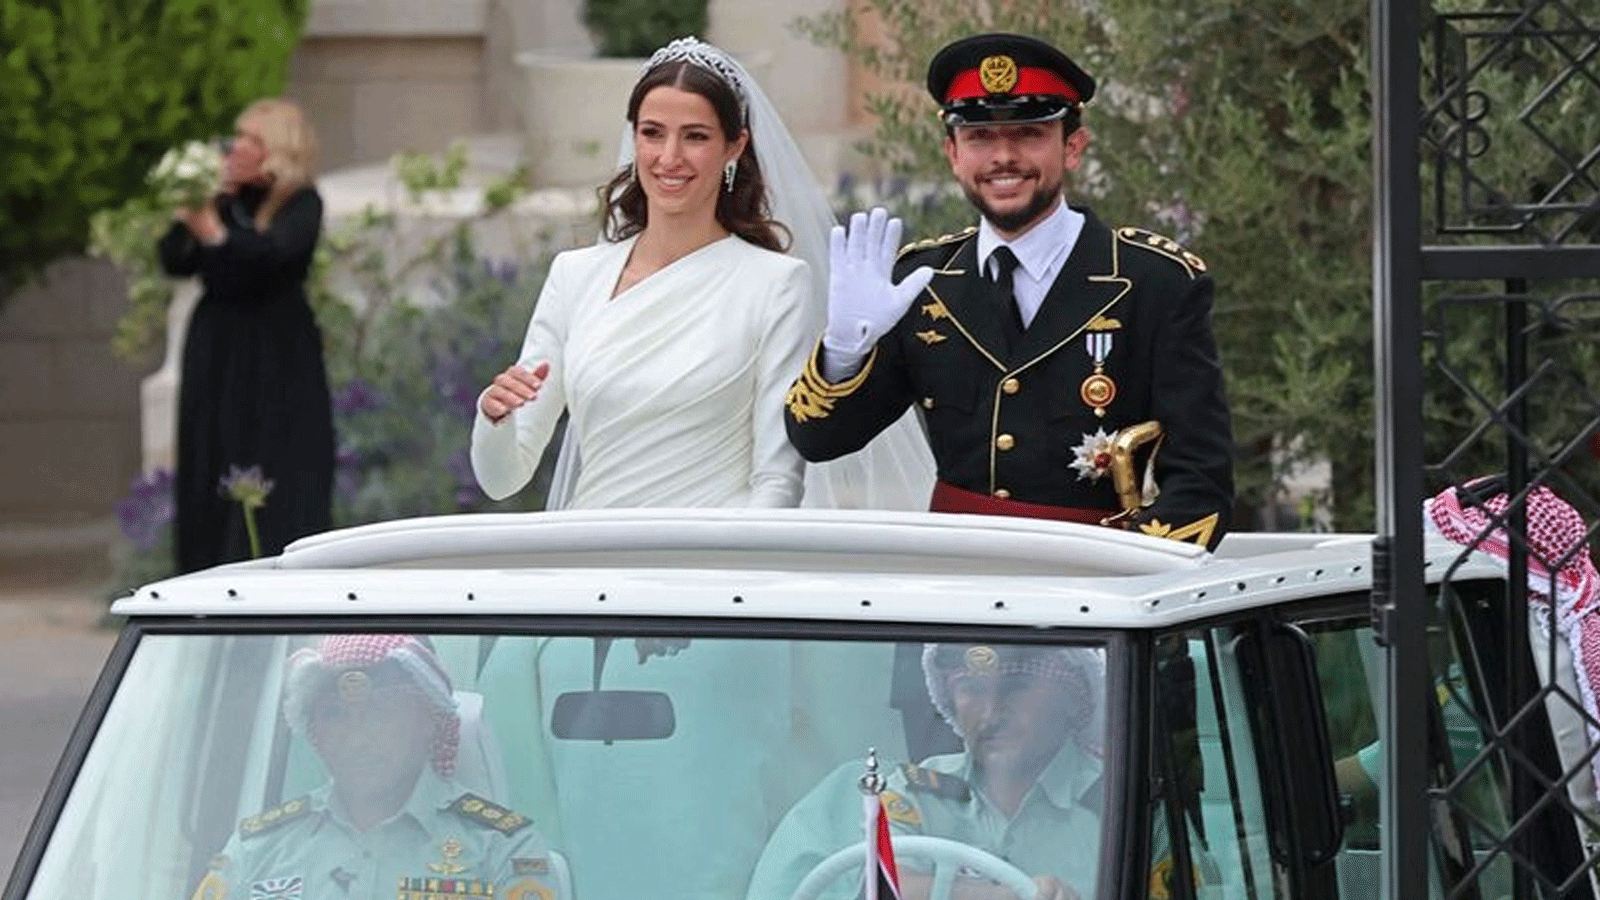 ولي العهد الأردني الأمير الحسين بن عبد الله الثاني يوم زفافه على رجوة آل سيف